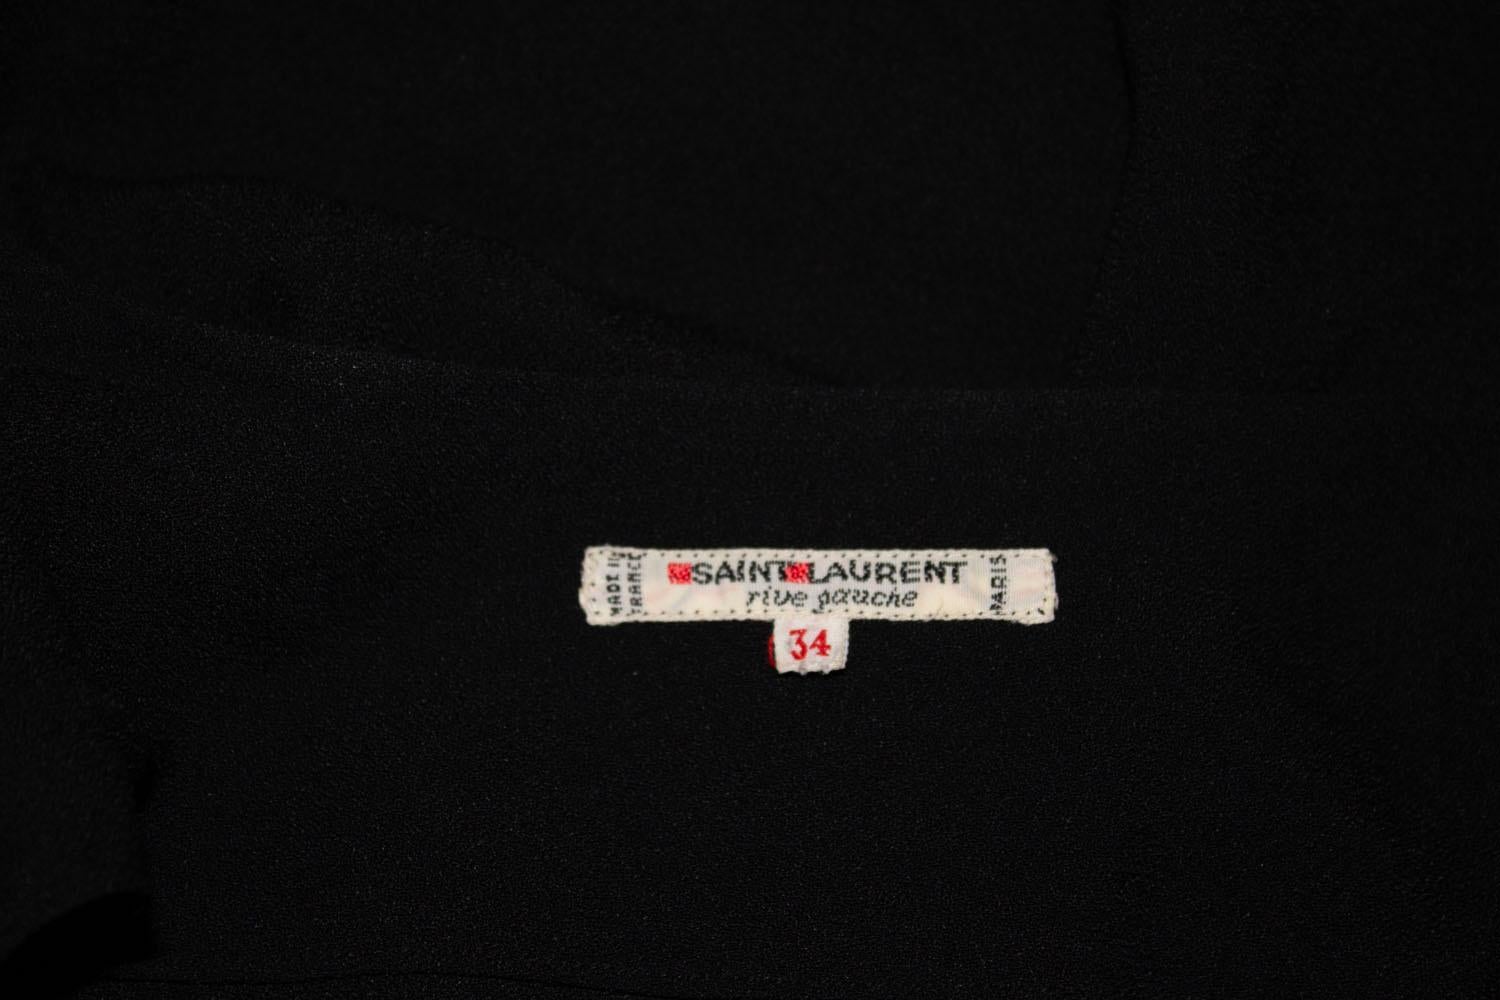 Un grand  Veste noire vintage facile à porter, Yves Saint Laurent Rive Gauche. La veste est en crêpe noir, avec des poignets boutonnés et des plis sur l'épaule. La tenue n'est pas serrée. Taille 34.
Mesures Buste 35'' longueur 25''